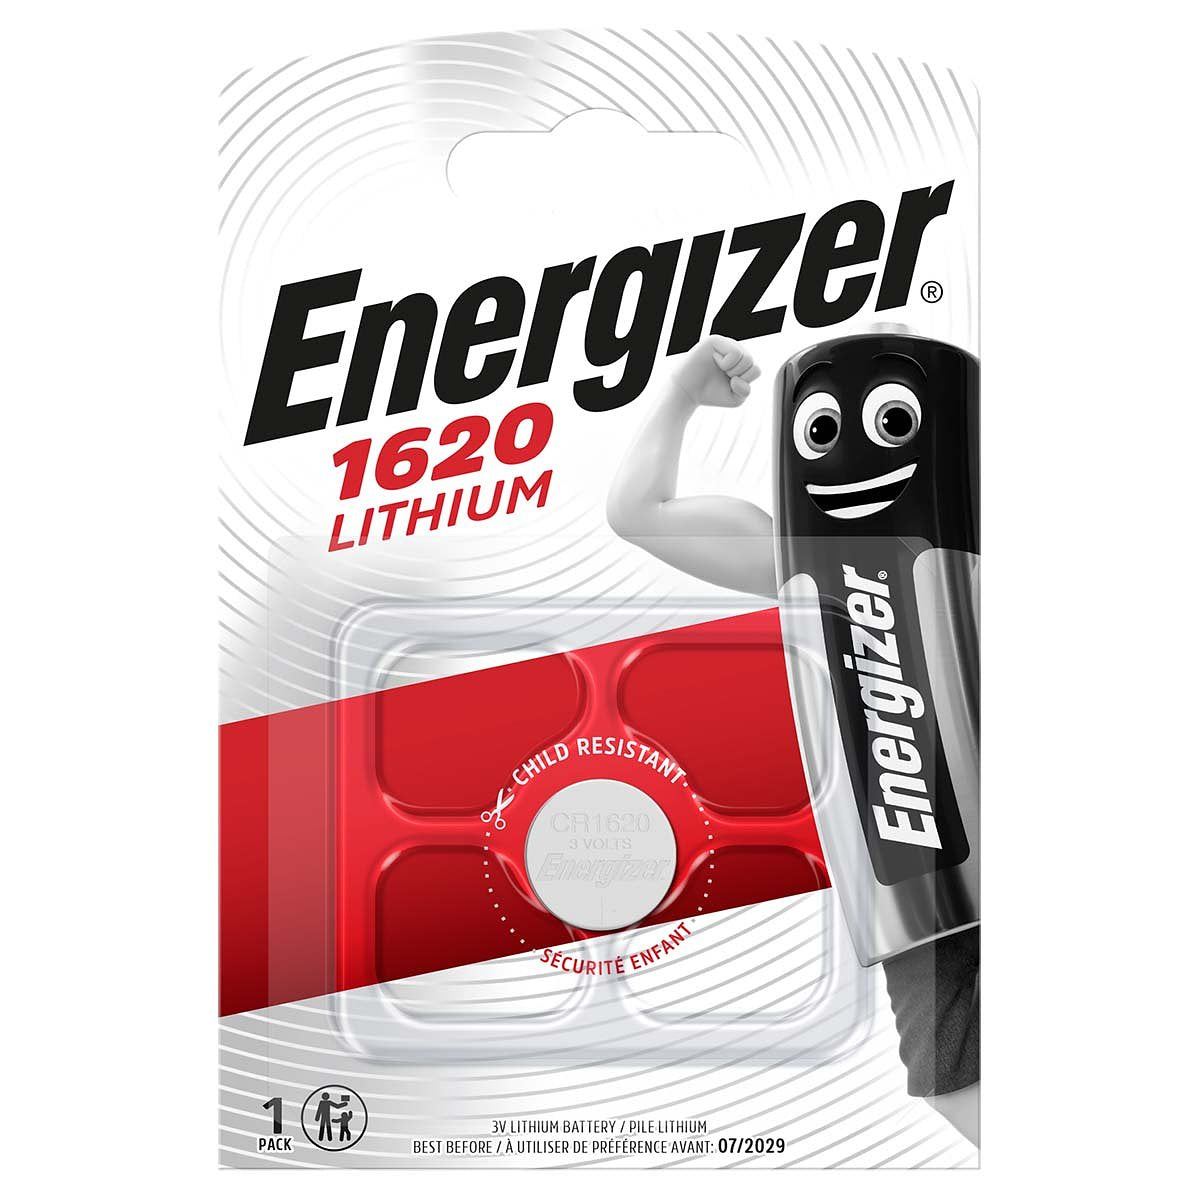 Energizer Lithium Knoopcel Batterij CR1620 3 V 1-Blister